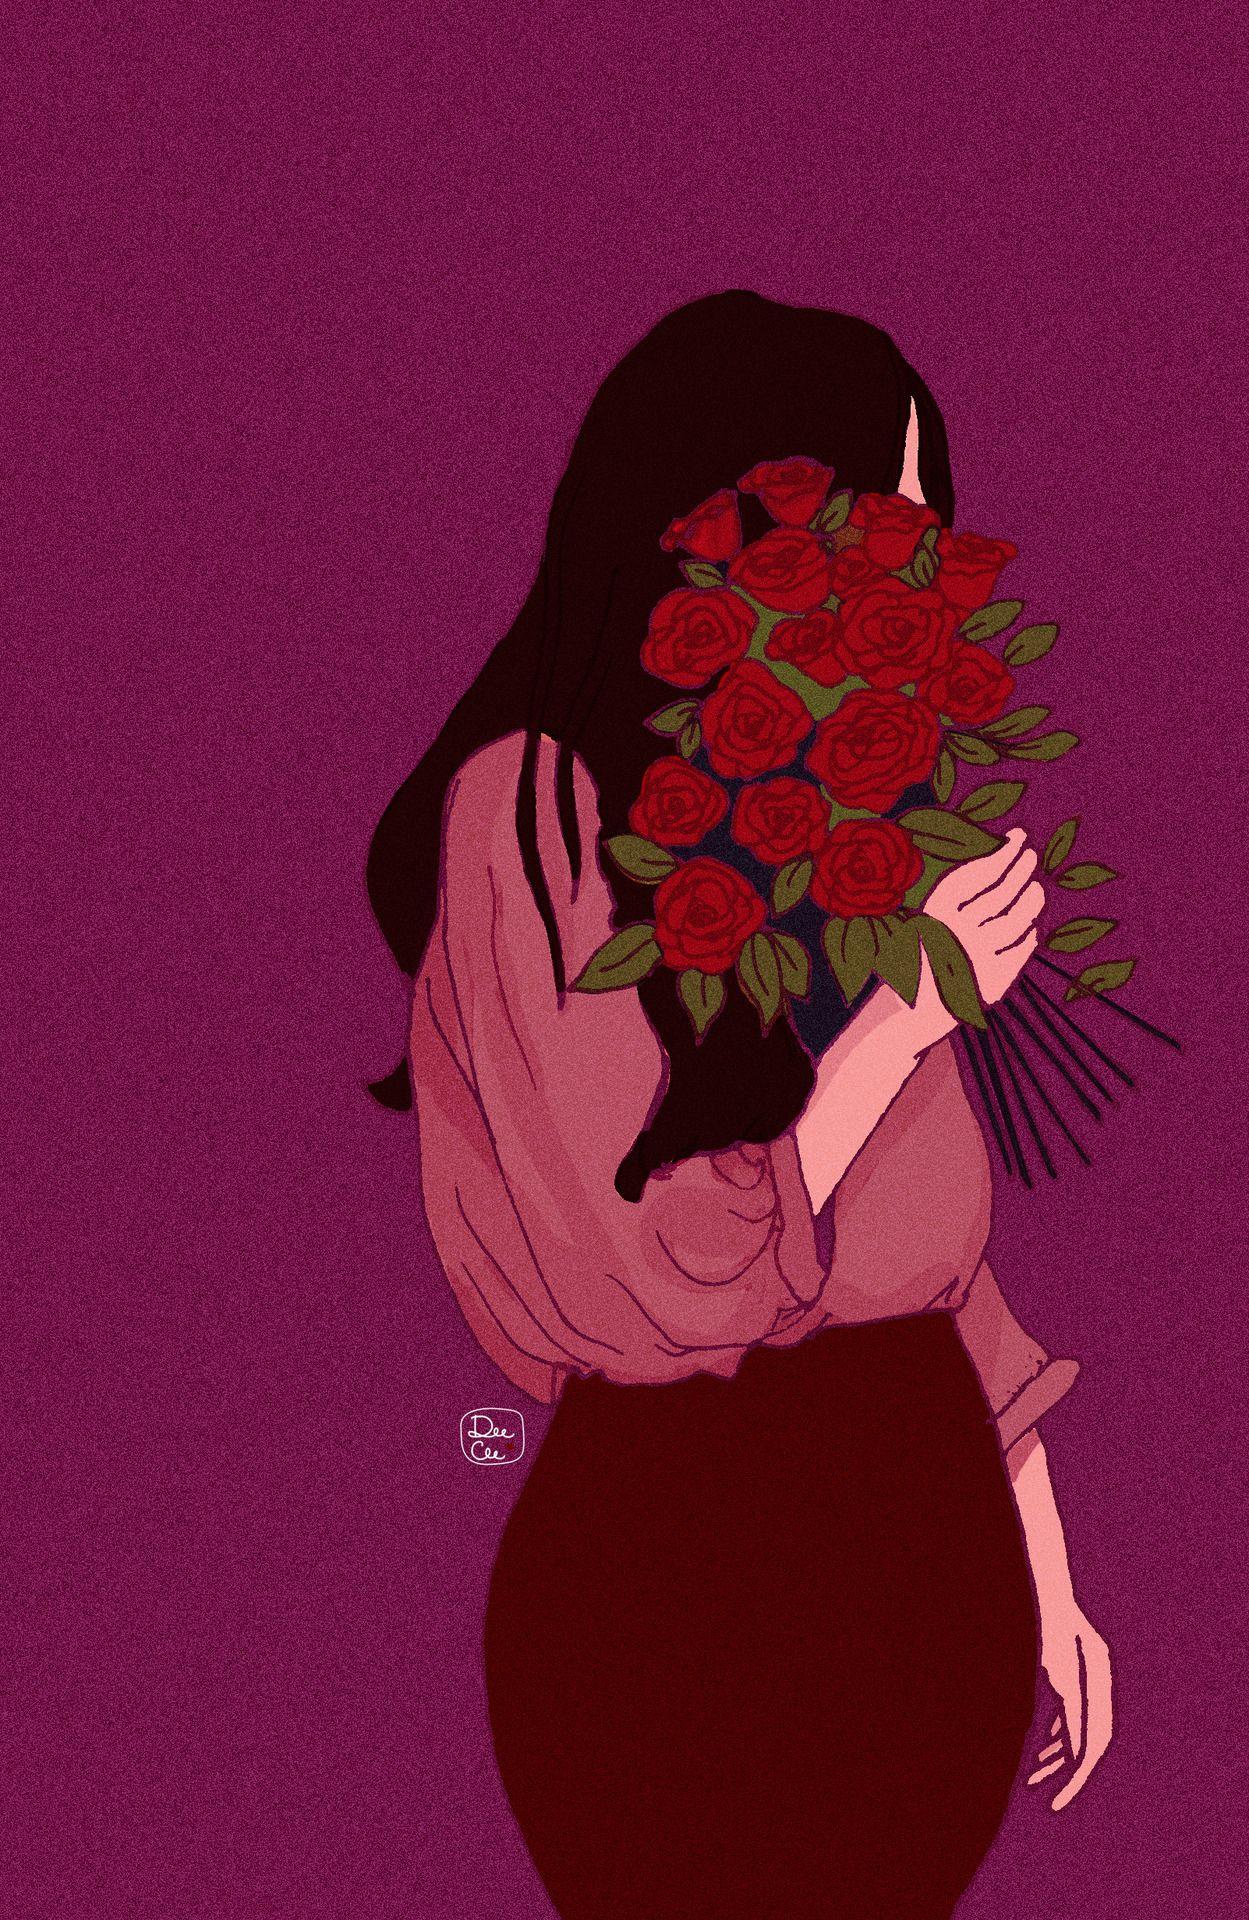 Love for Roses. Ilustration art, Art wallpaper, Girly art